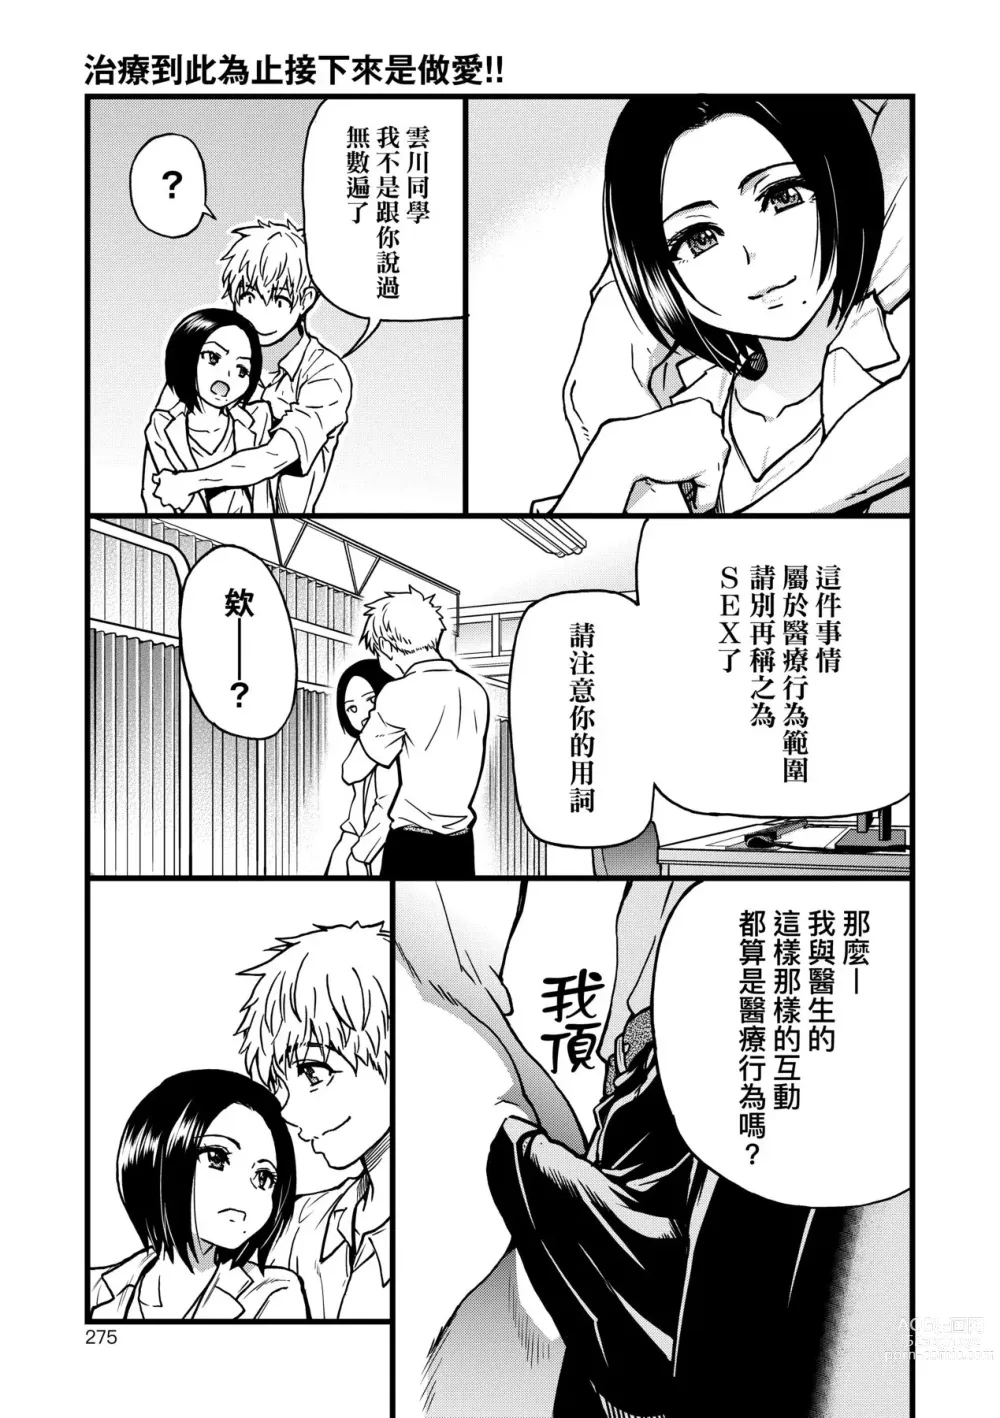 Page 280 of manga 靠我的精液本復快癒!!